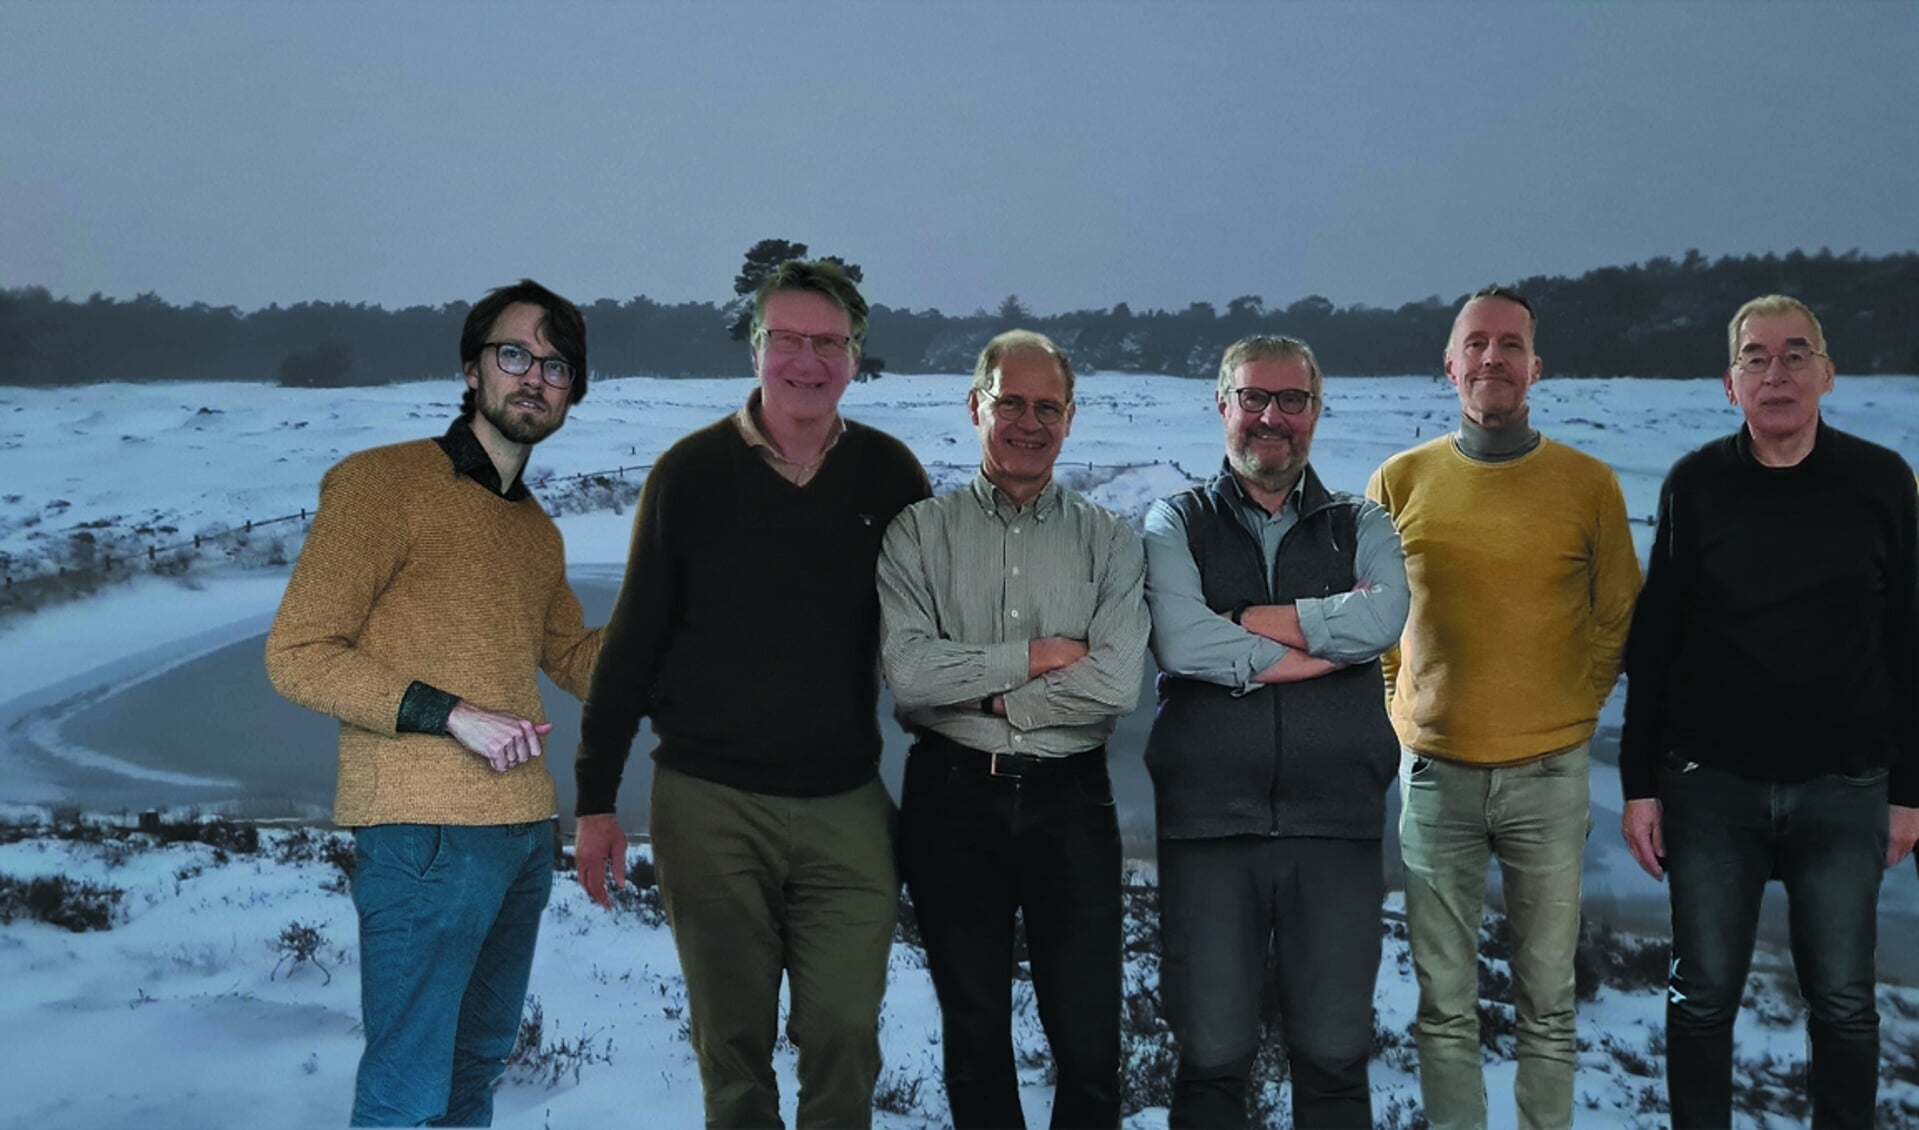 Ko Melis, Richard Botman, Roel van Kuppevelt, Wil Spronck, Maarten Koningsberger, Ron Kuyper.